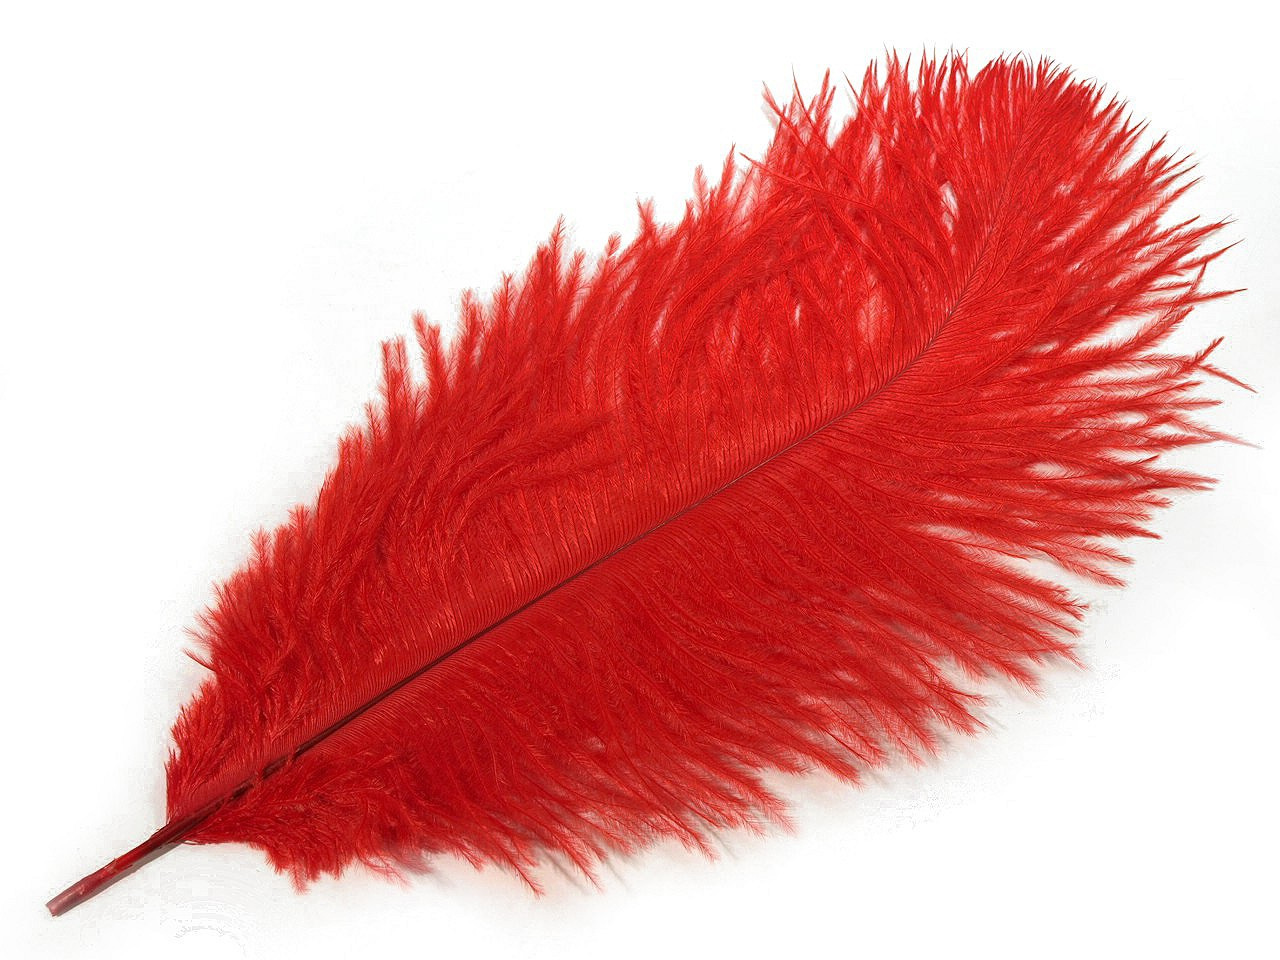 Pštrosí peří délka cca 20-25 cm, barva 4 červená jahoda